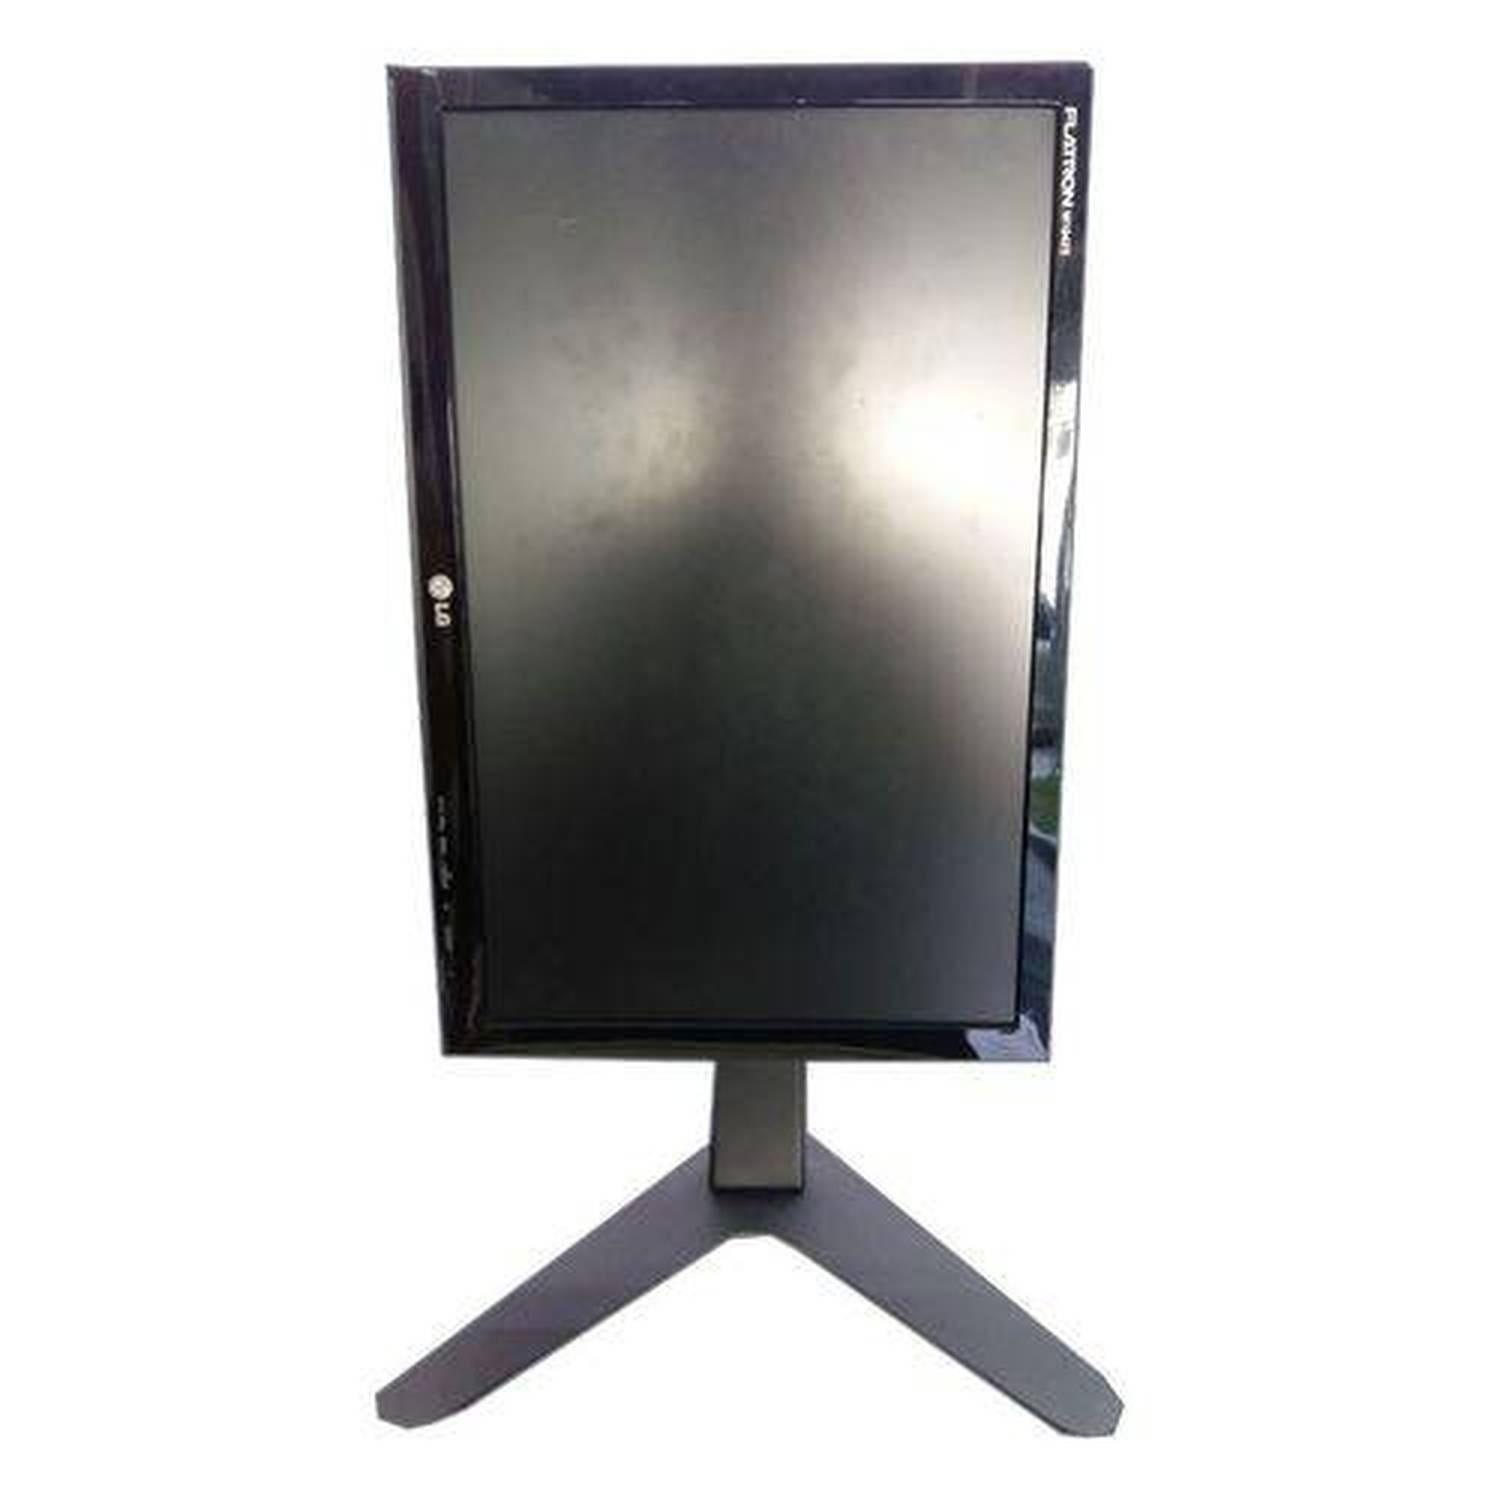 Suporte de Mesa/Pedestal Ergonômico Nr17 para Monitor Led/LCD/3D de 10" A 24" com Inclinação Mt-Slim - - 4